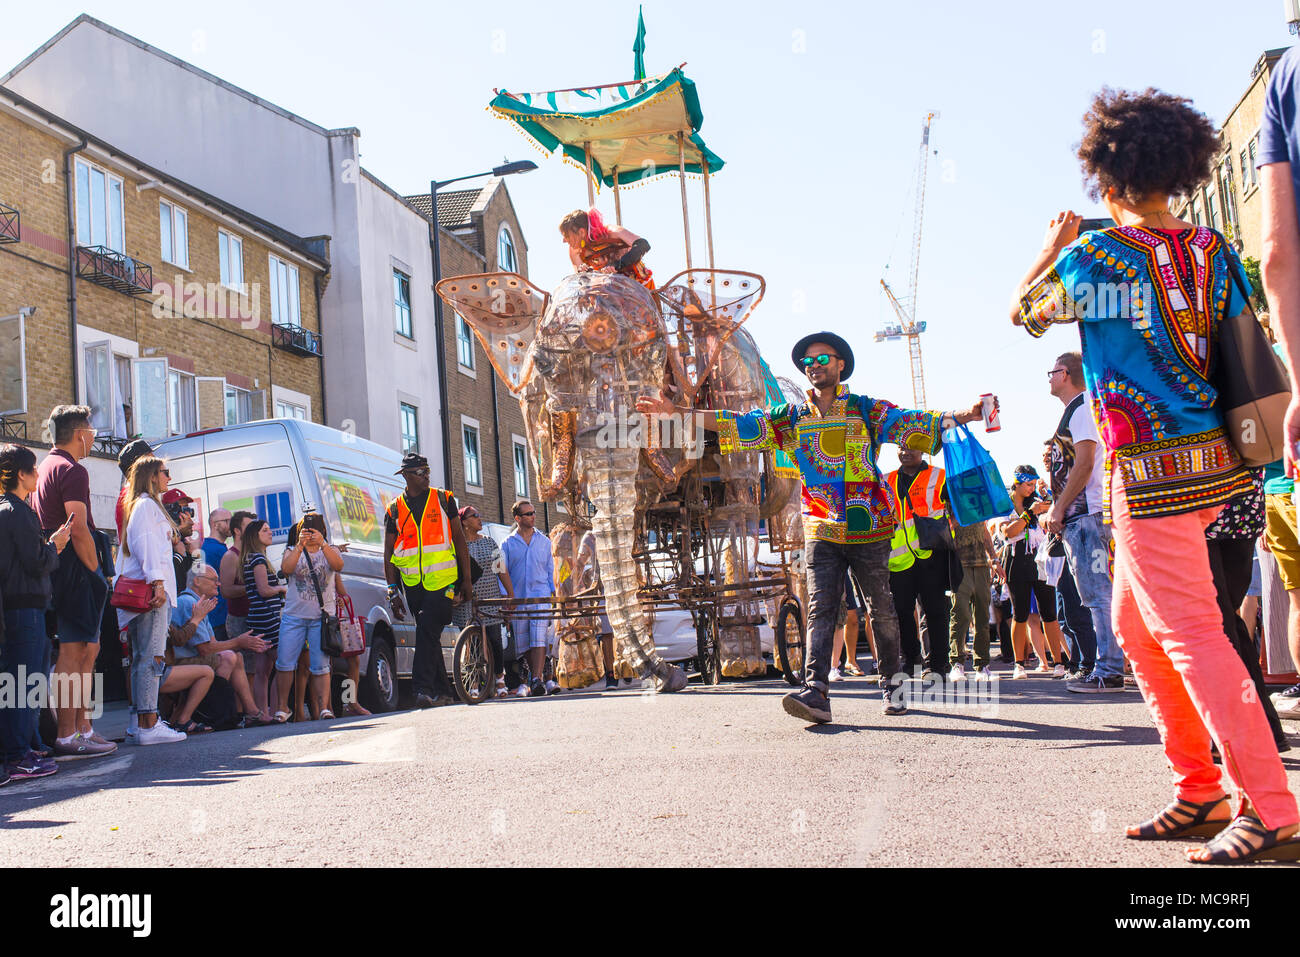 Hackney, Londres, Royaume-Uni. 11 septembre 2016. Les gens qui regardent le défilé avec un gros flotteur pendant l'approche de l'éléphant d'Hackney Carnival 2016 dans Ridley Banque D'Images